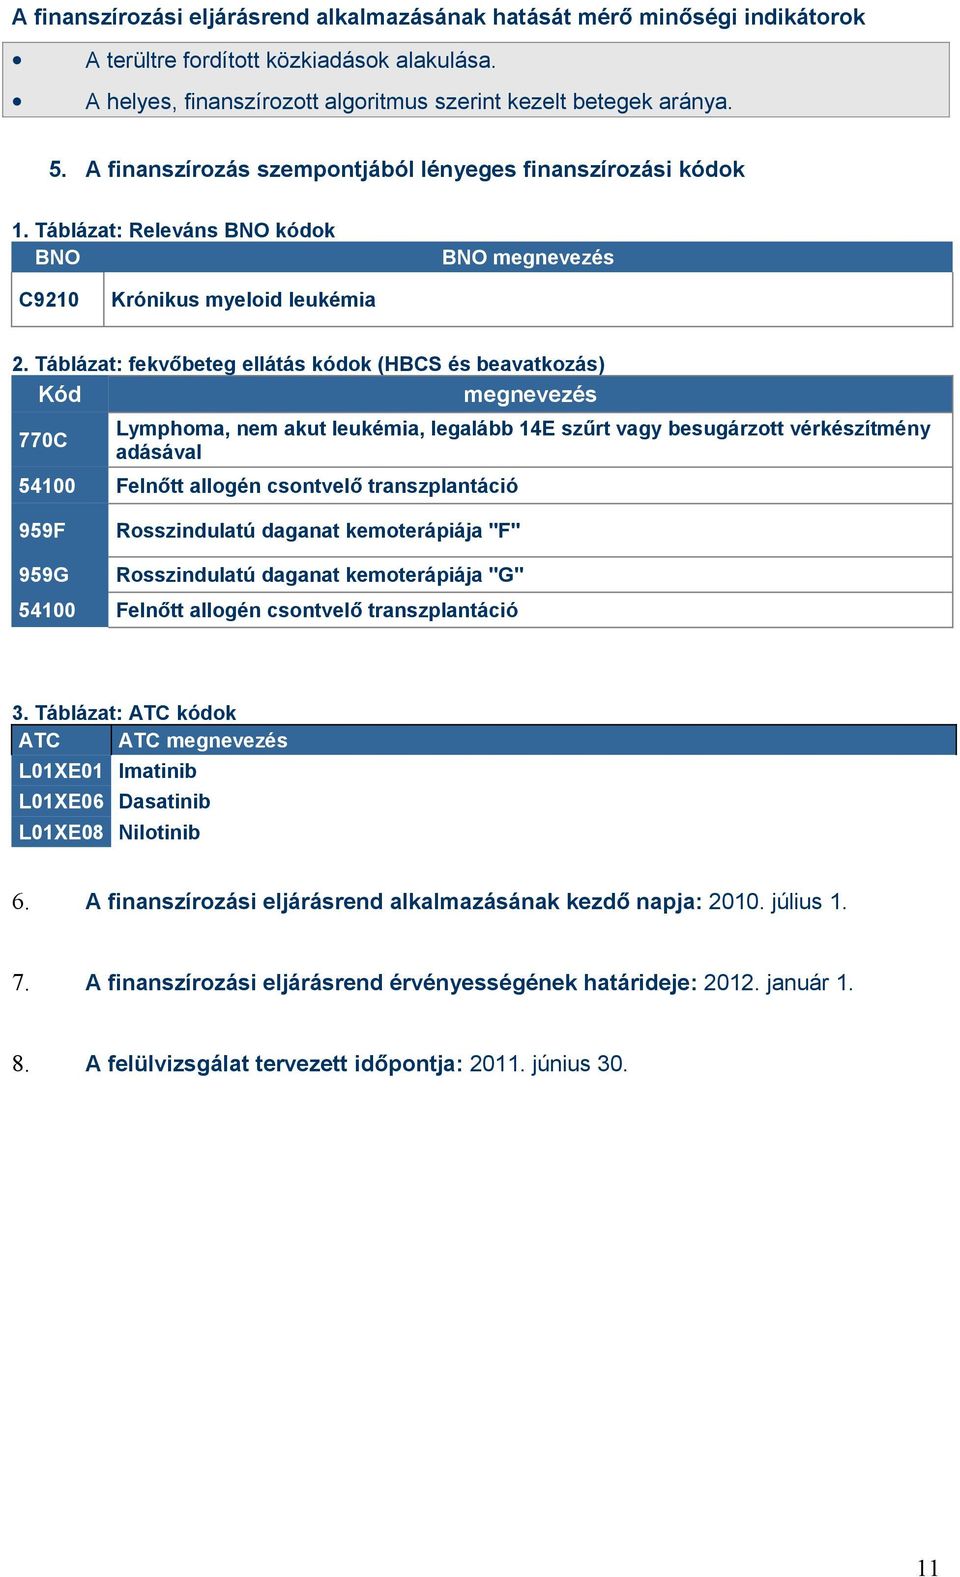 Táblázat: fekvőbeteg ellátás kódok (HBCS és beavatkozás) Kód megnevezés 770C Lymphoma, nem akut leukémia, legalább 14E szűrt vagy besugárzott vérkészítmény adásával 54100 Felnőtt allogén csontvelő